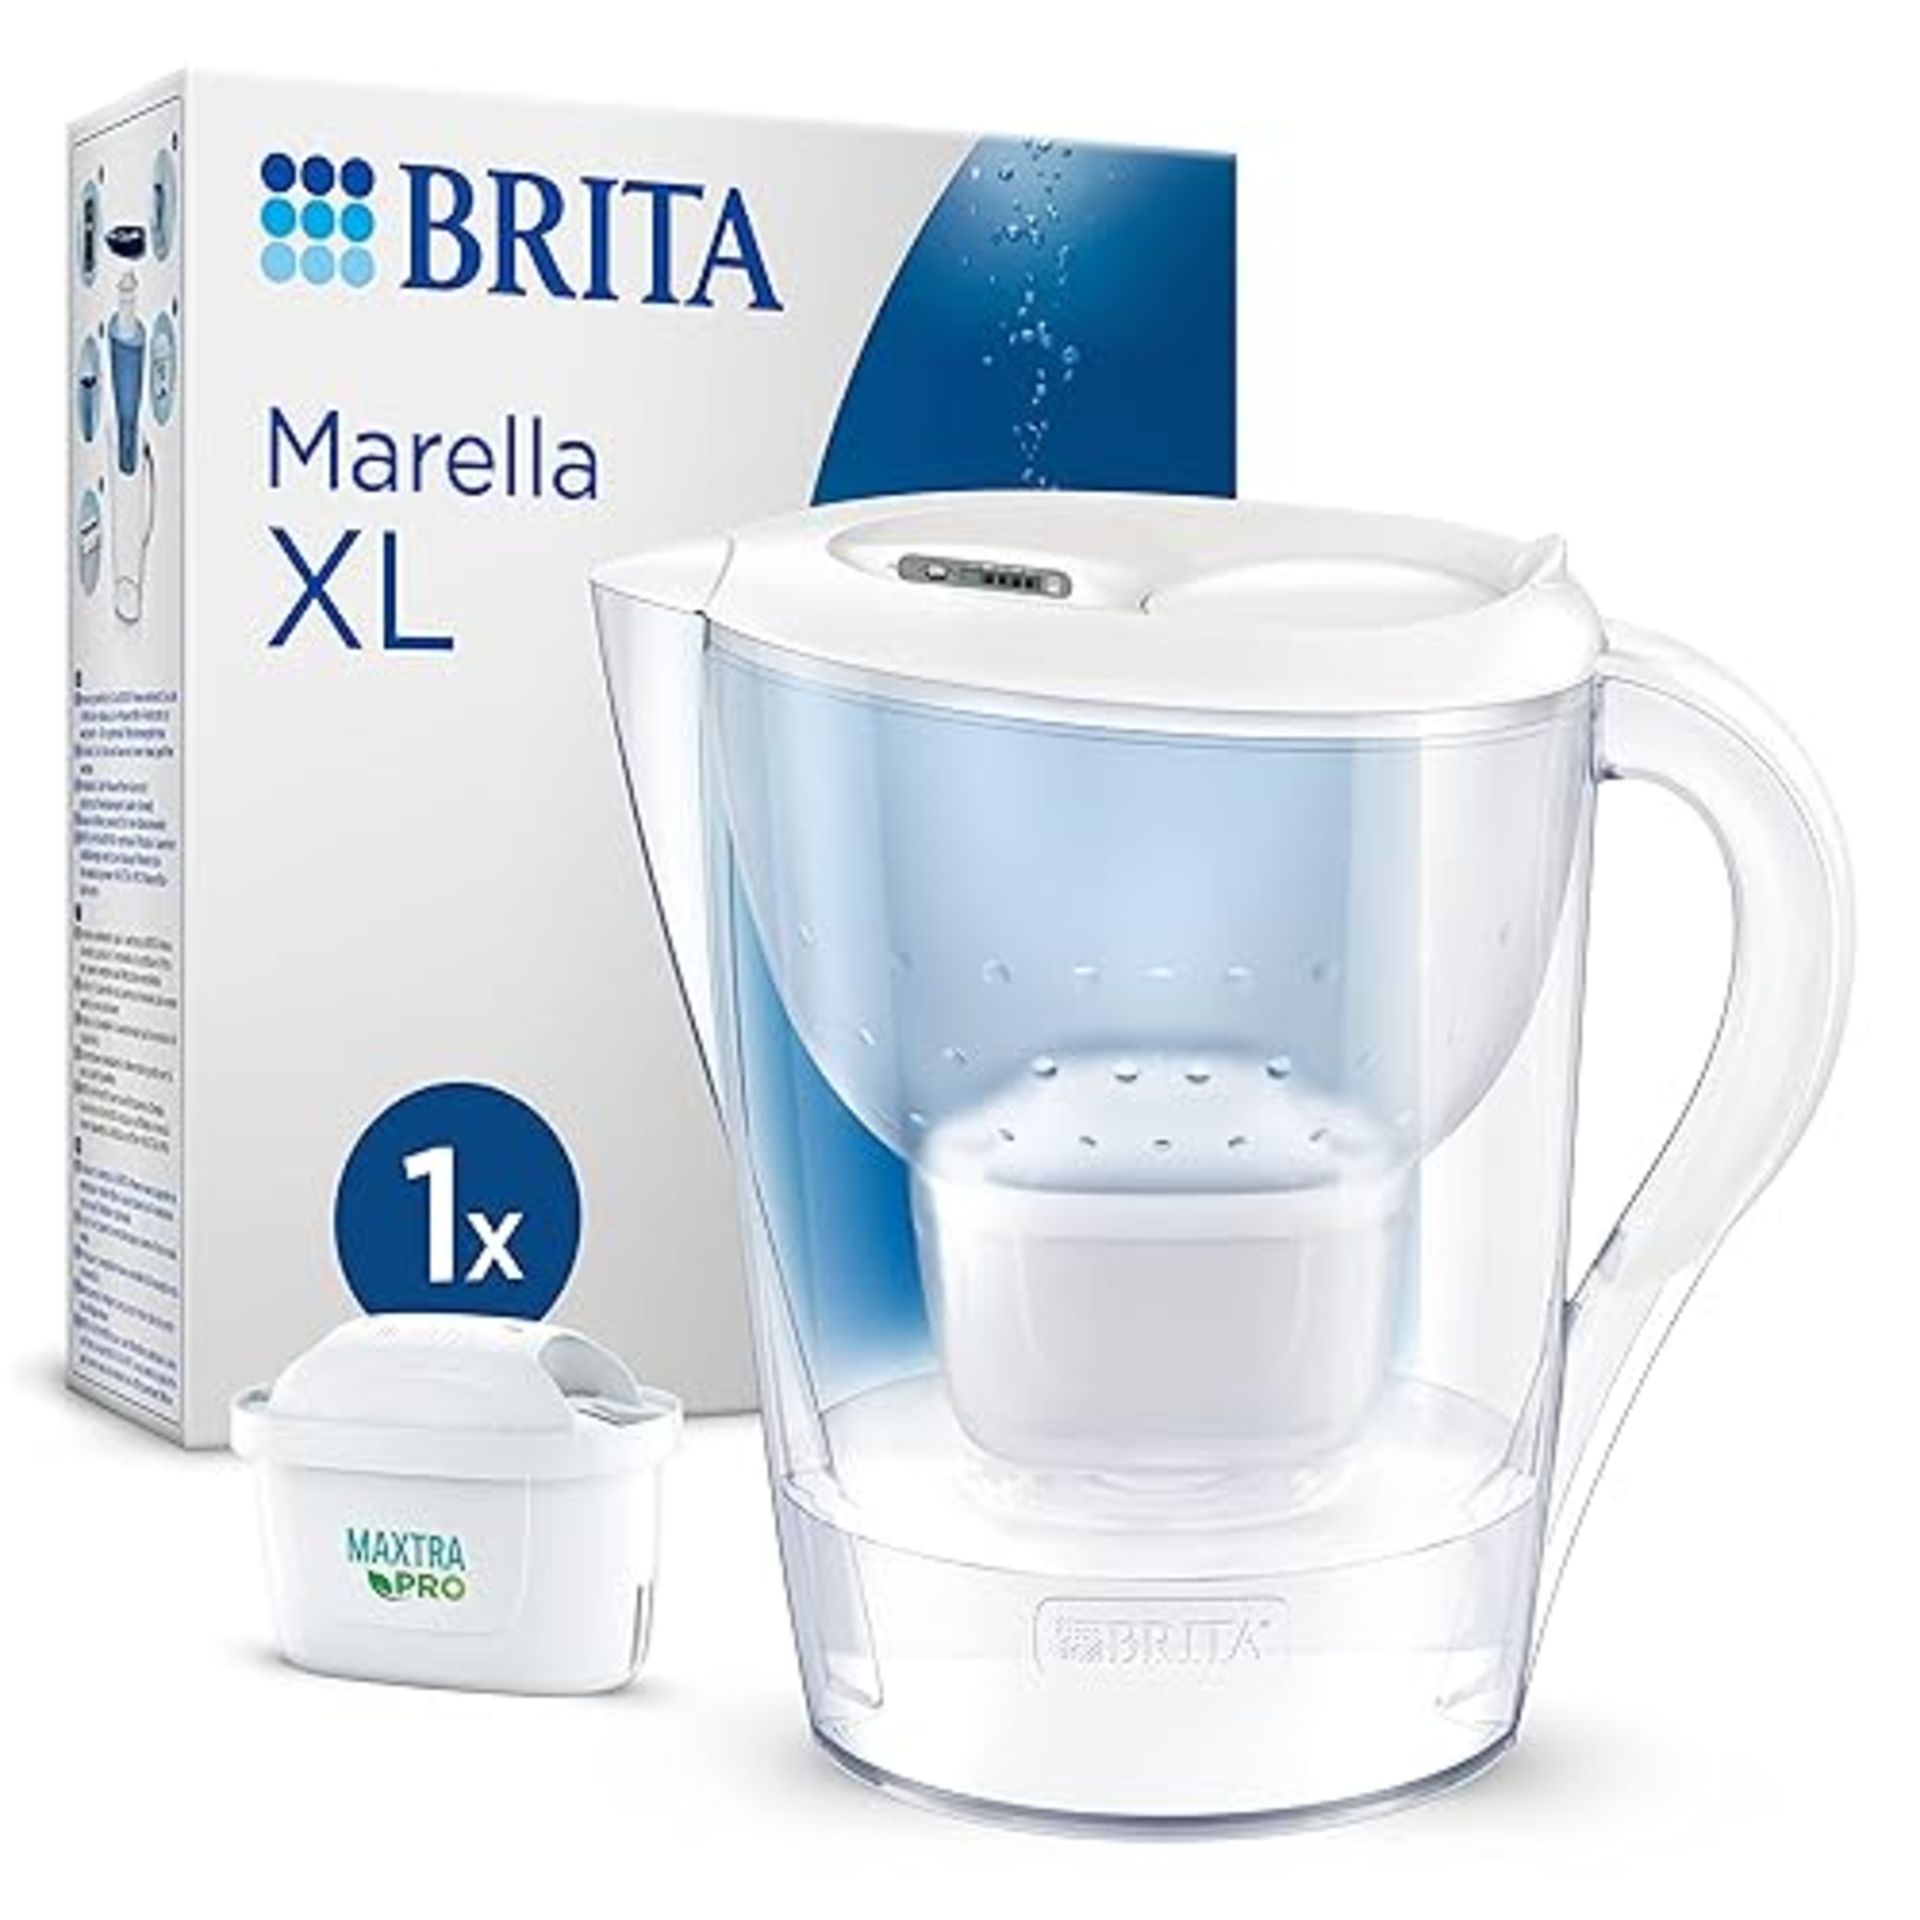 Brita Marella XL Water Filter Jug White (3.5L) Incl. 1X Maxtra Pro All-In-1 Cartridge - Large-Vol...